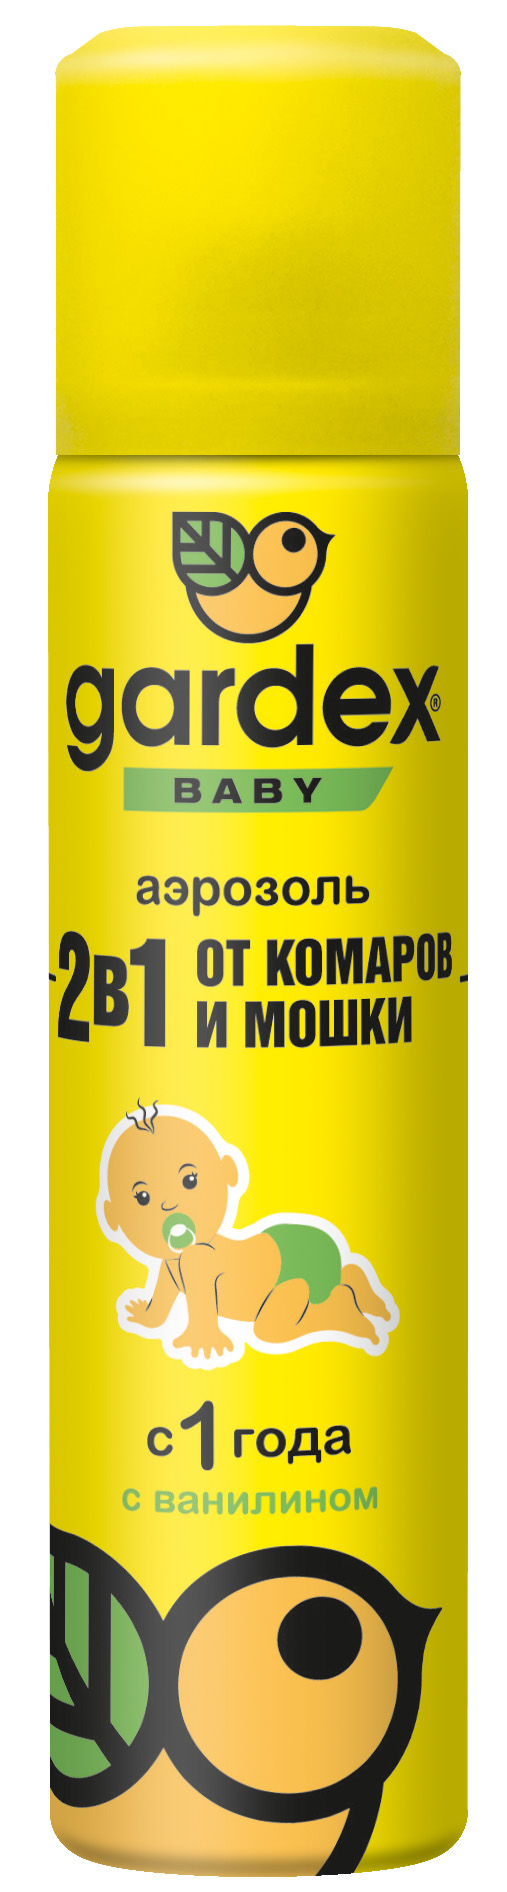 Аэрозоль от комаров и мошки Gardex Baby, 80 мл - фото 1